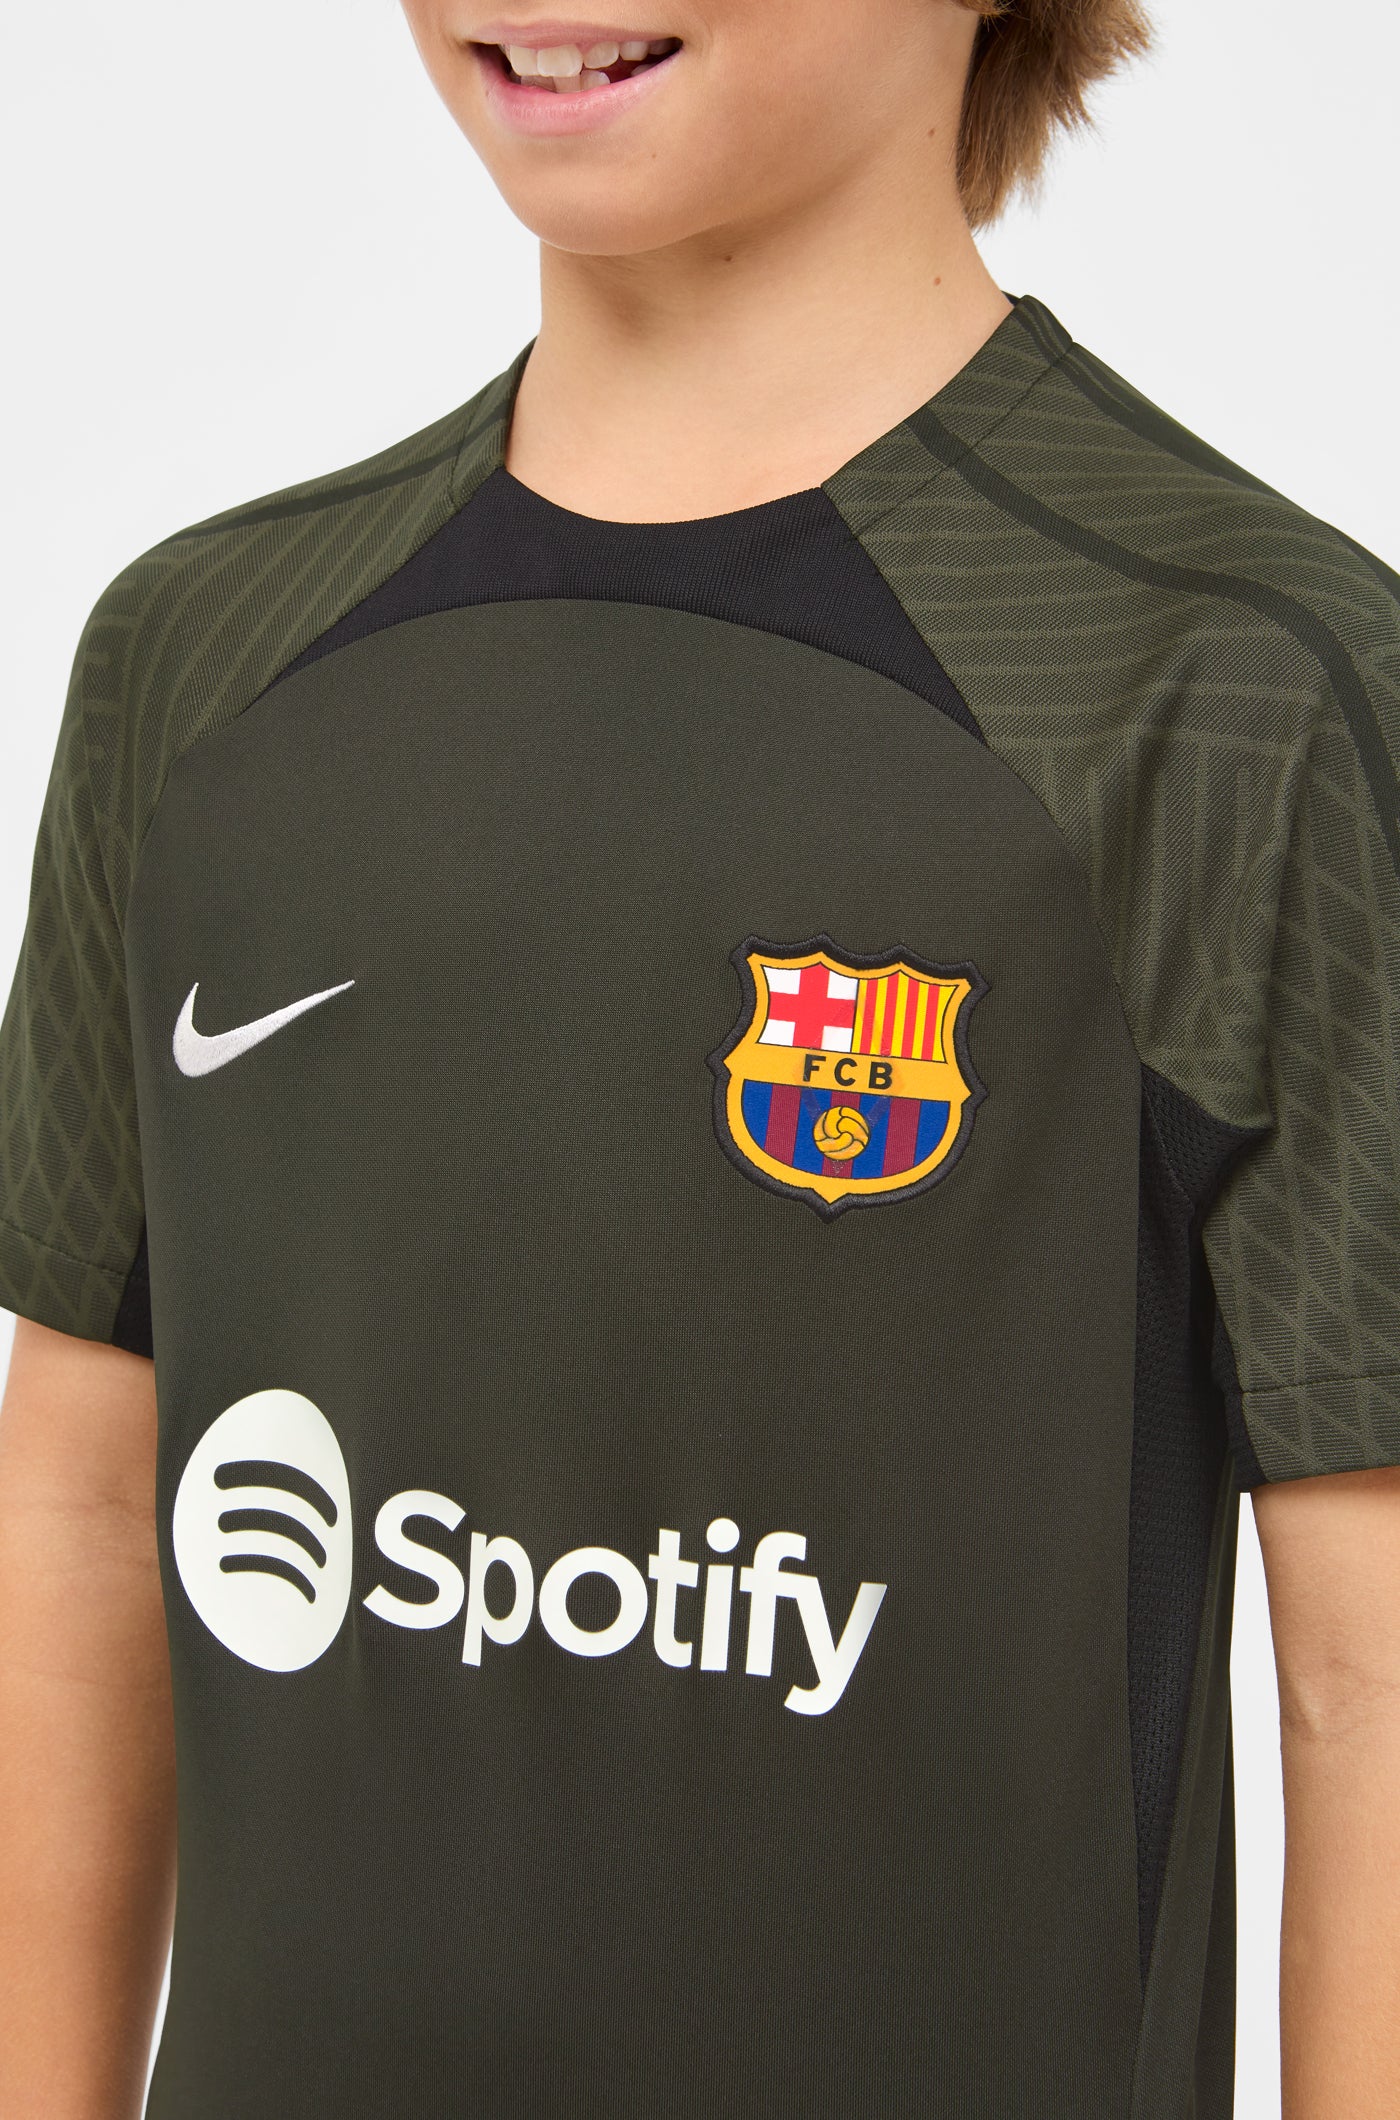 Entrainement homme – Barça Official Store Spotify Camp Nou